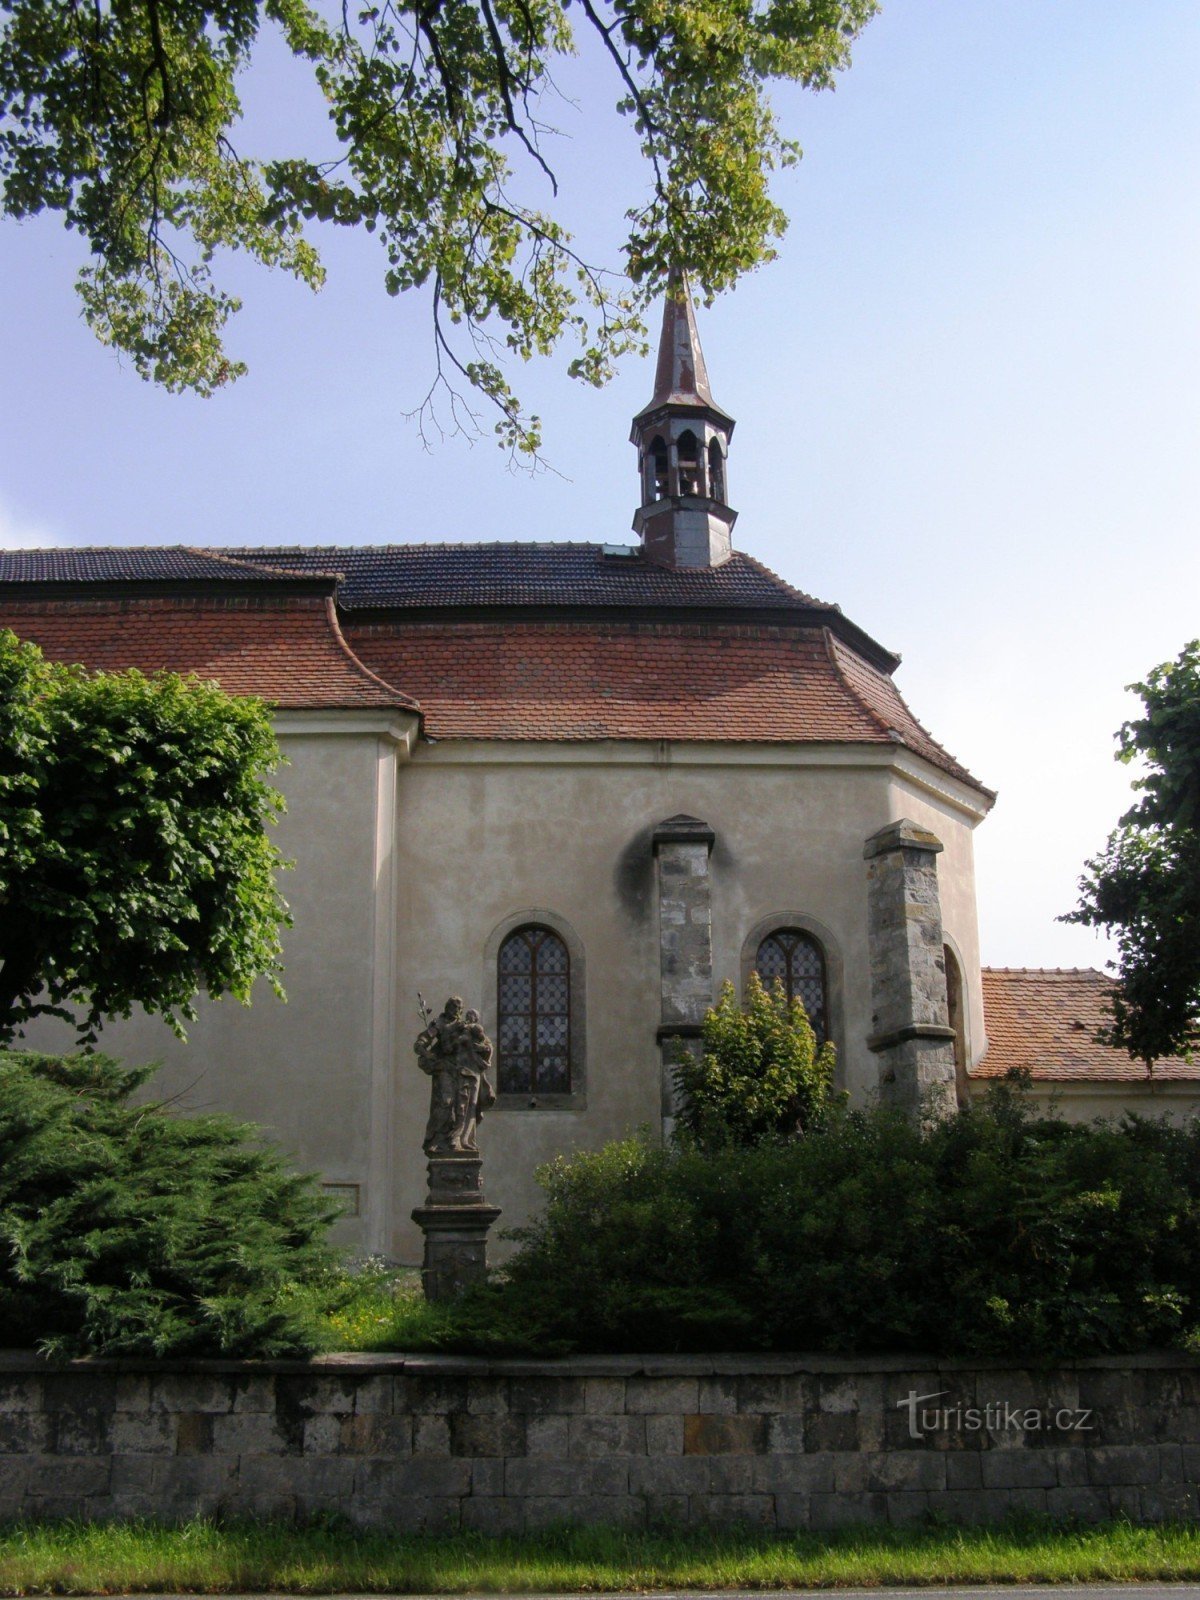 Libuň - Nhà thờ St. Martin